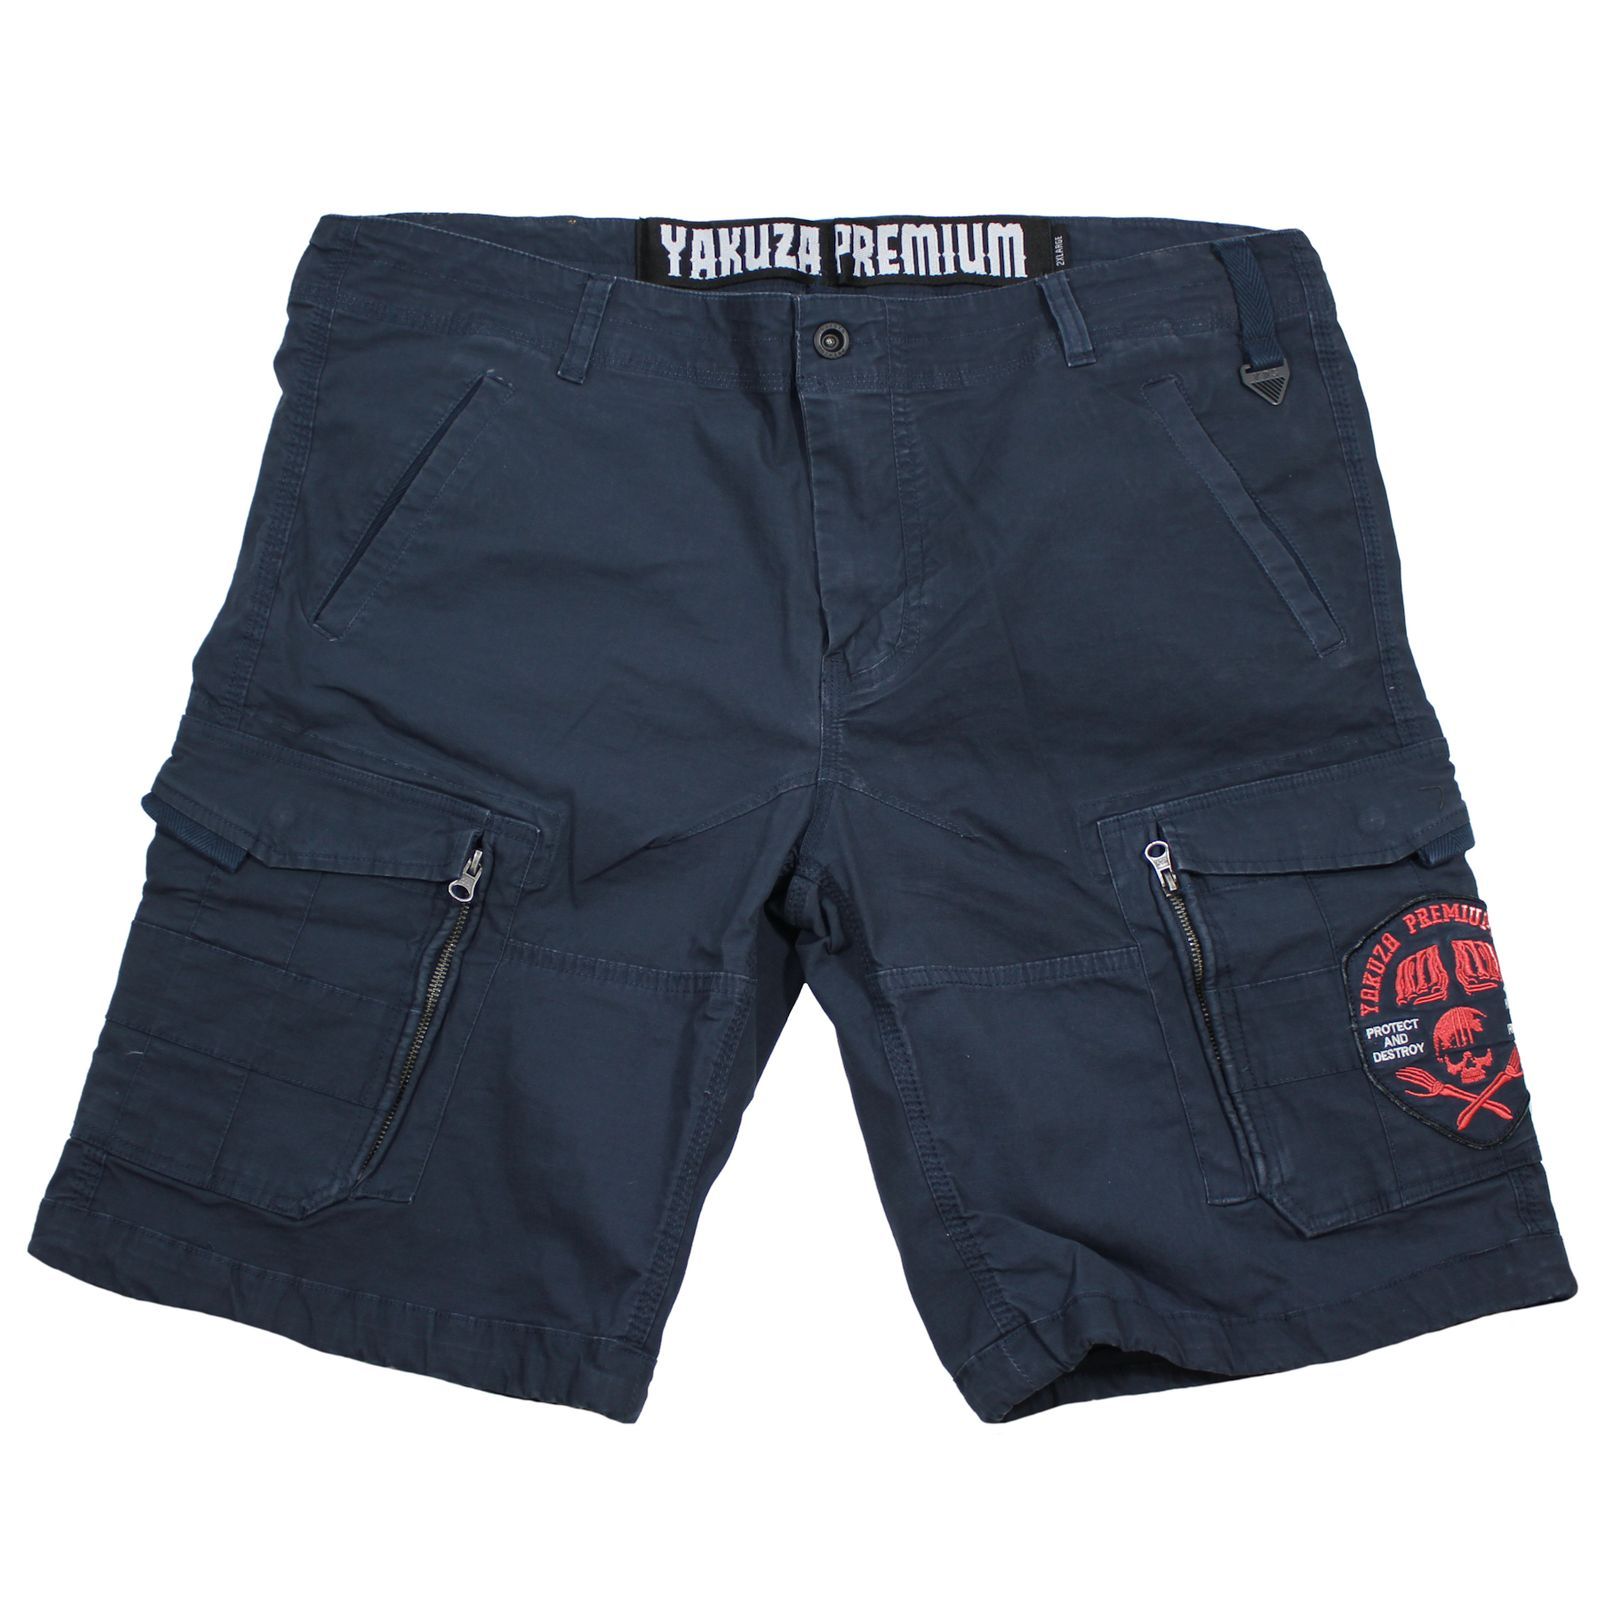 Yakuza Premium cargo shorts